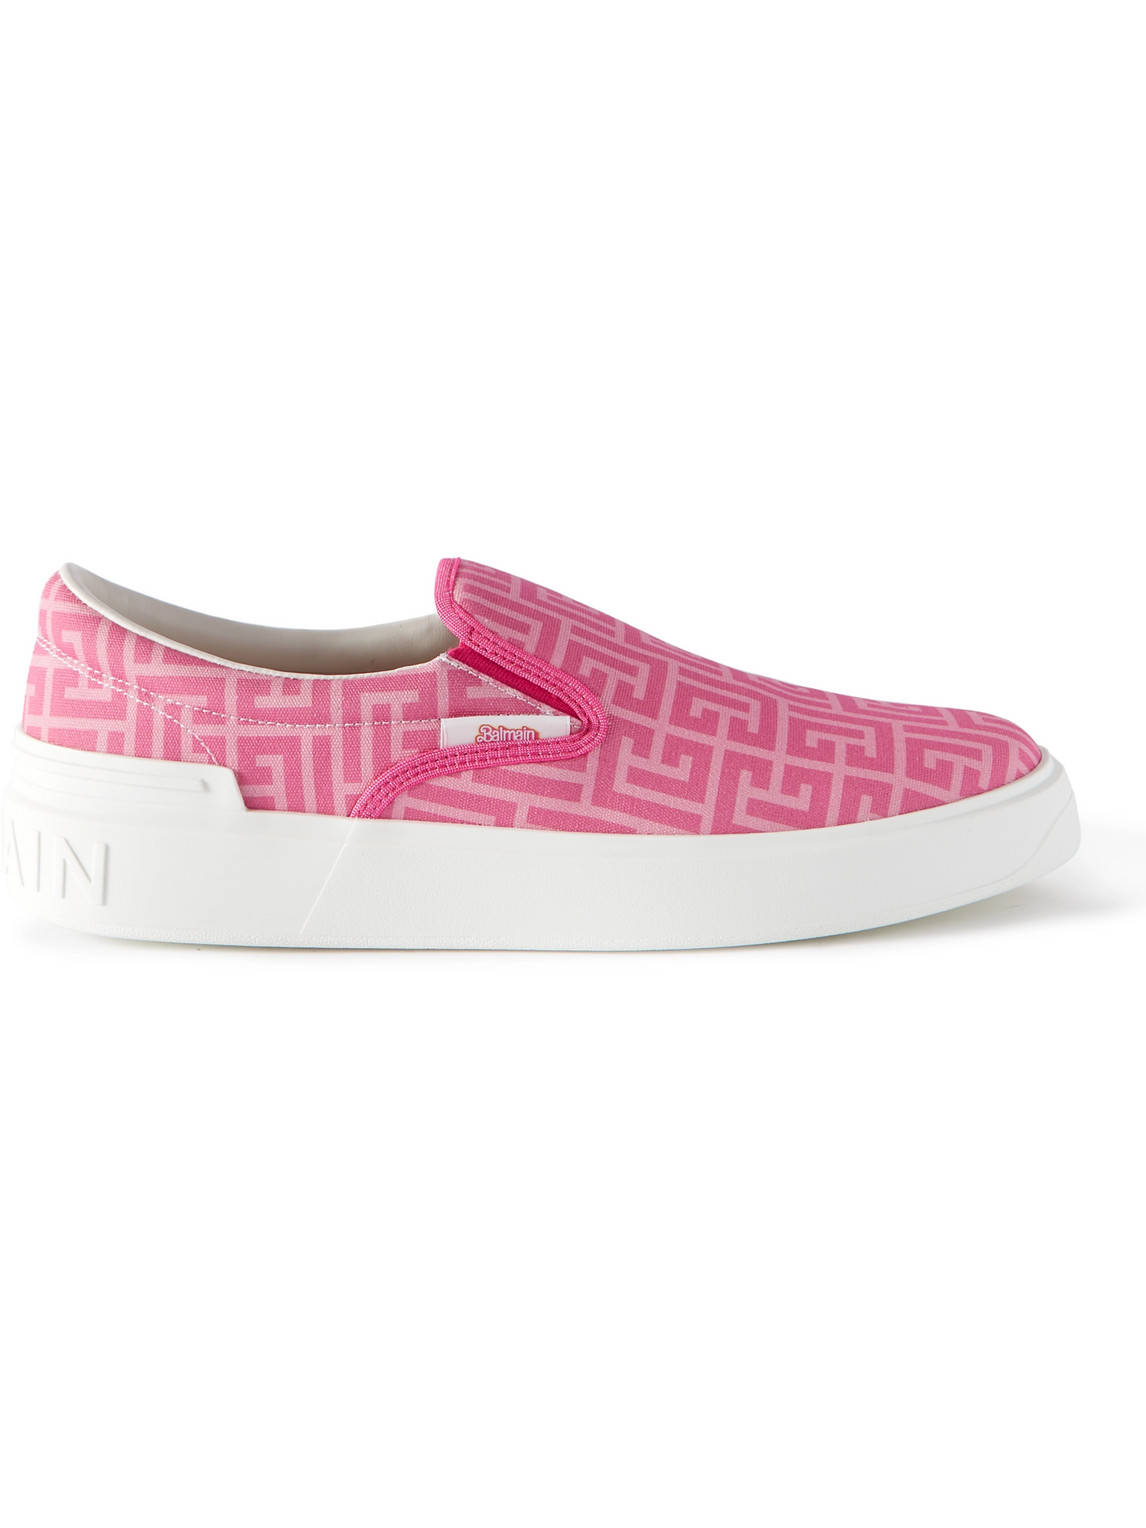 Balmain B-Court Embossed Balmain Monogram Pink Low Top Sneakers - Sneak in  Peace